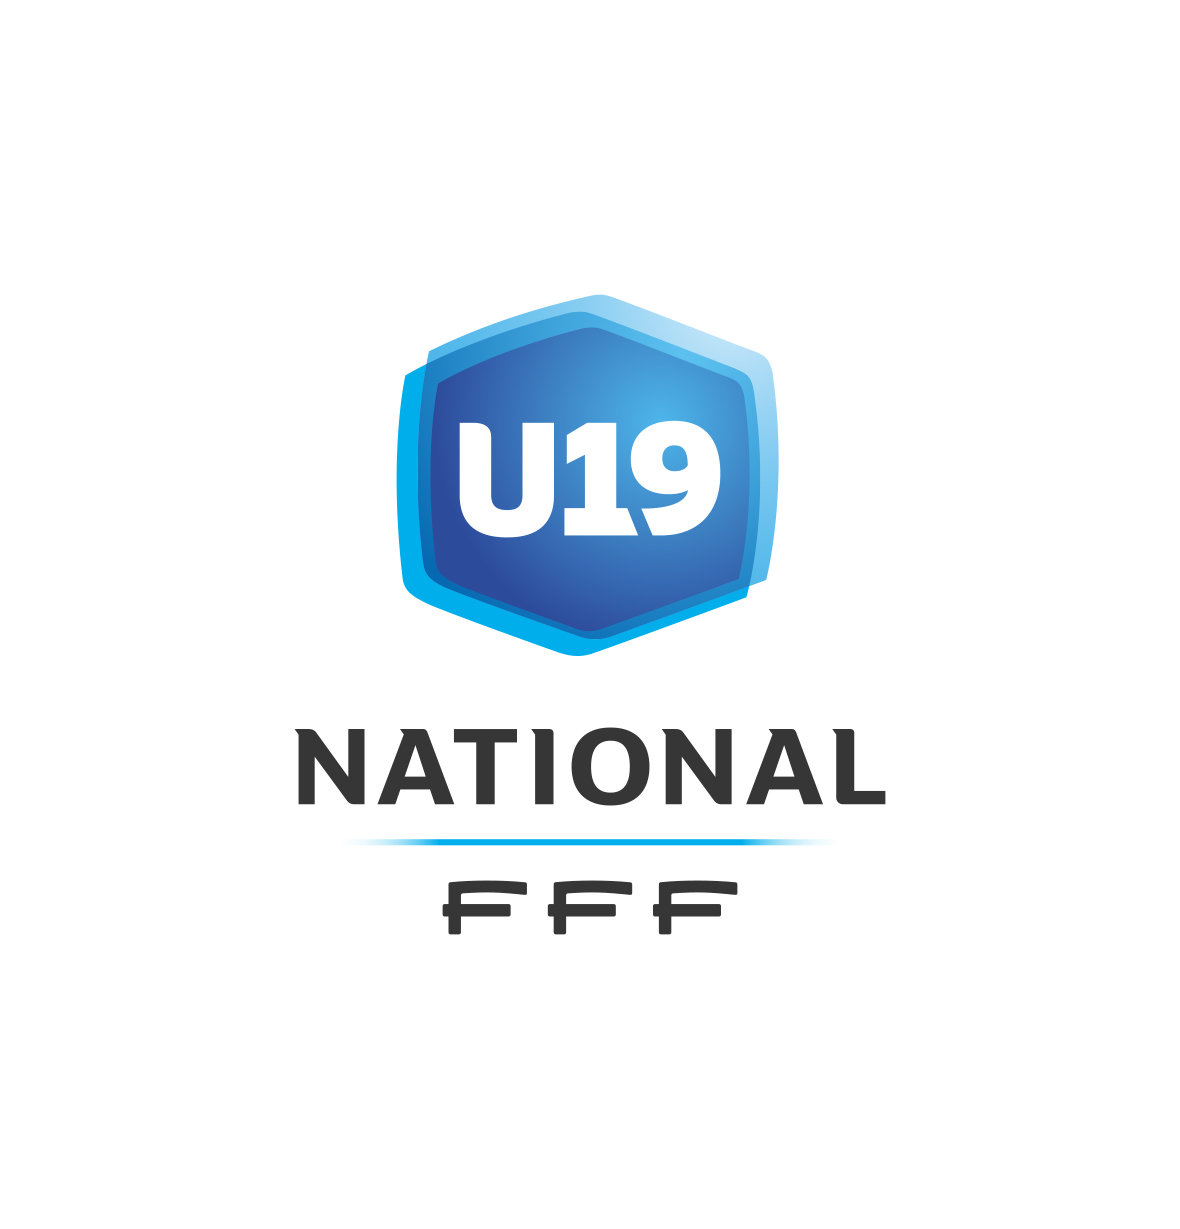 Cfa Girondins : Les résultats et le classement (U19, J1) - Formation Girondins 